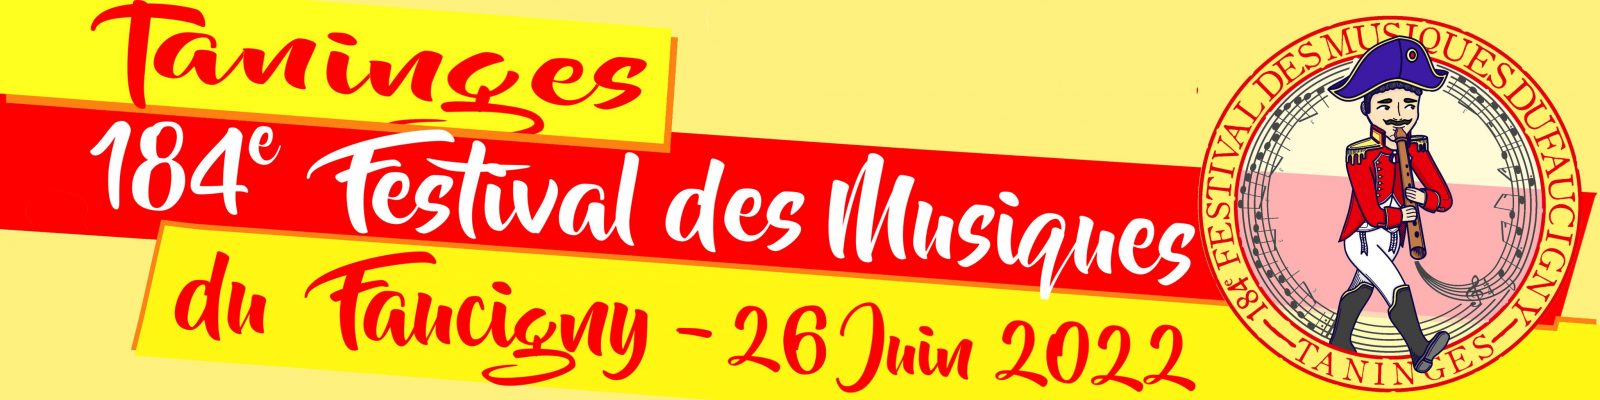 Festival des musiques du Faucigny